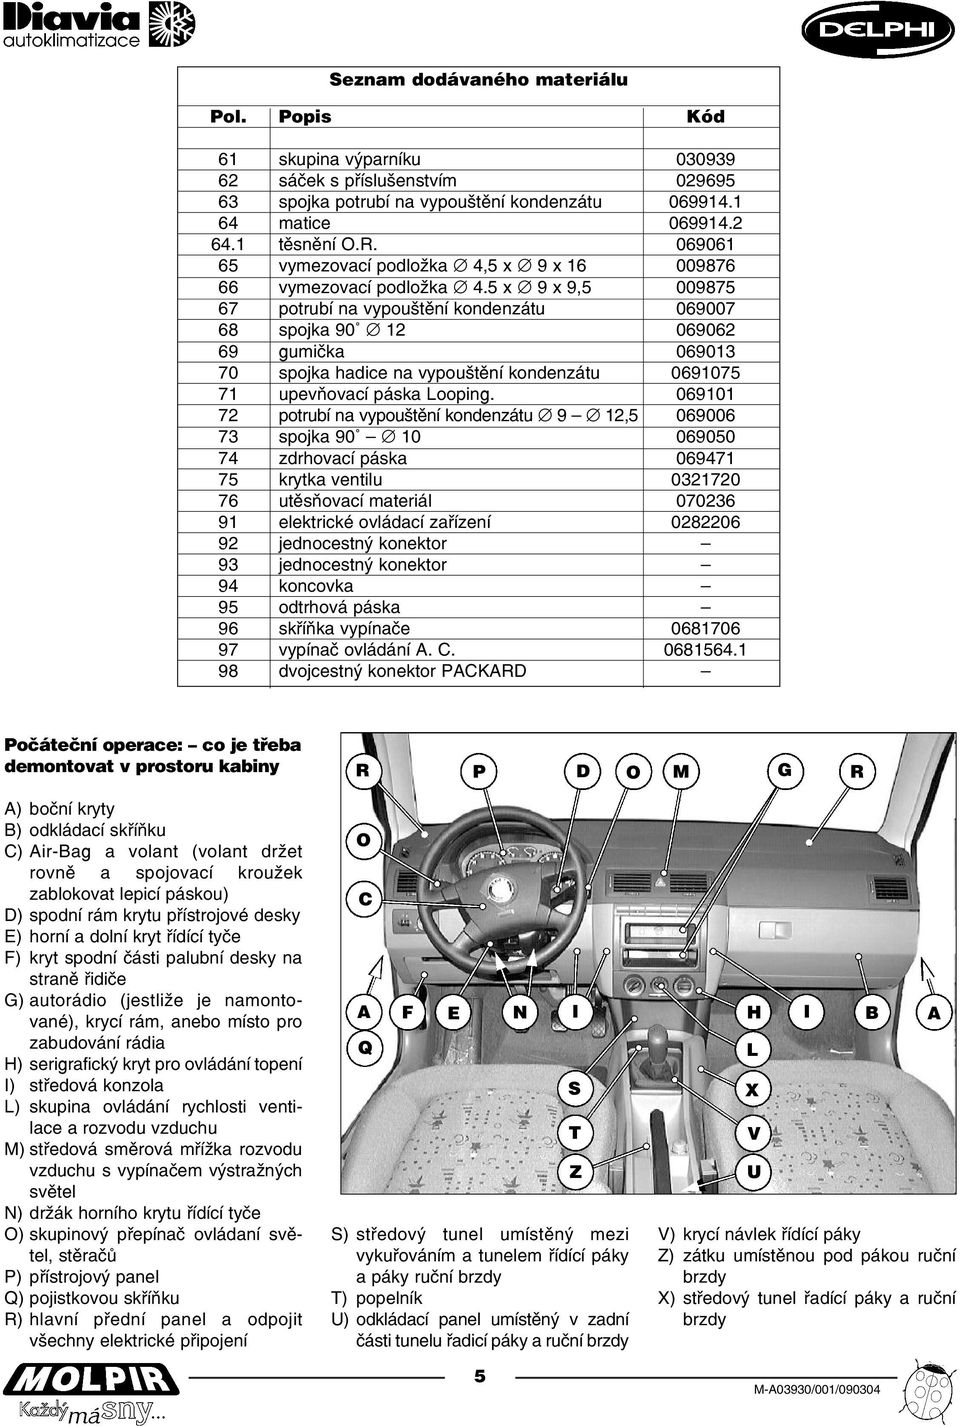 ŠKODA FABIA Montáž skupiny výparníku s ovládáním DIAVIA - PDF Free Download